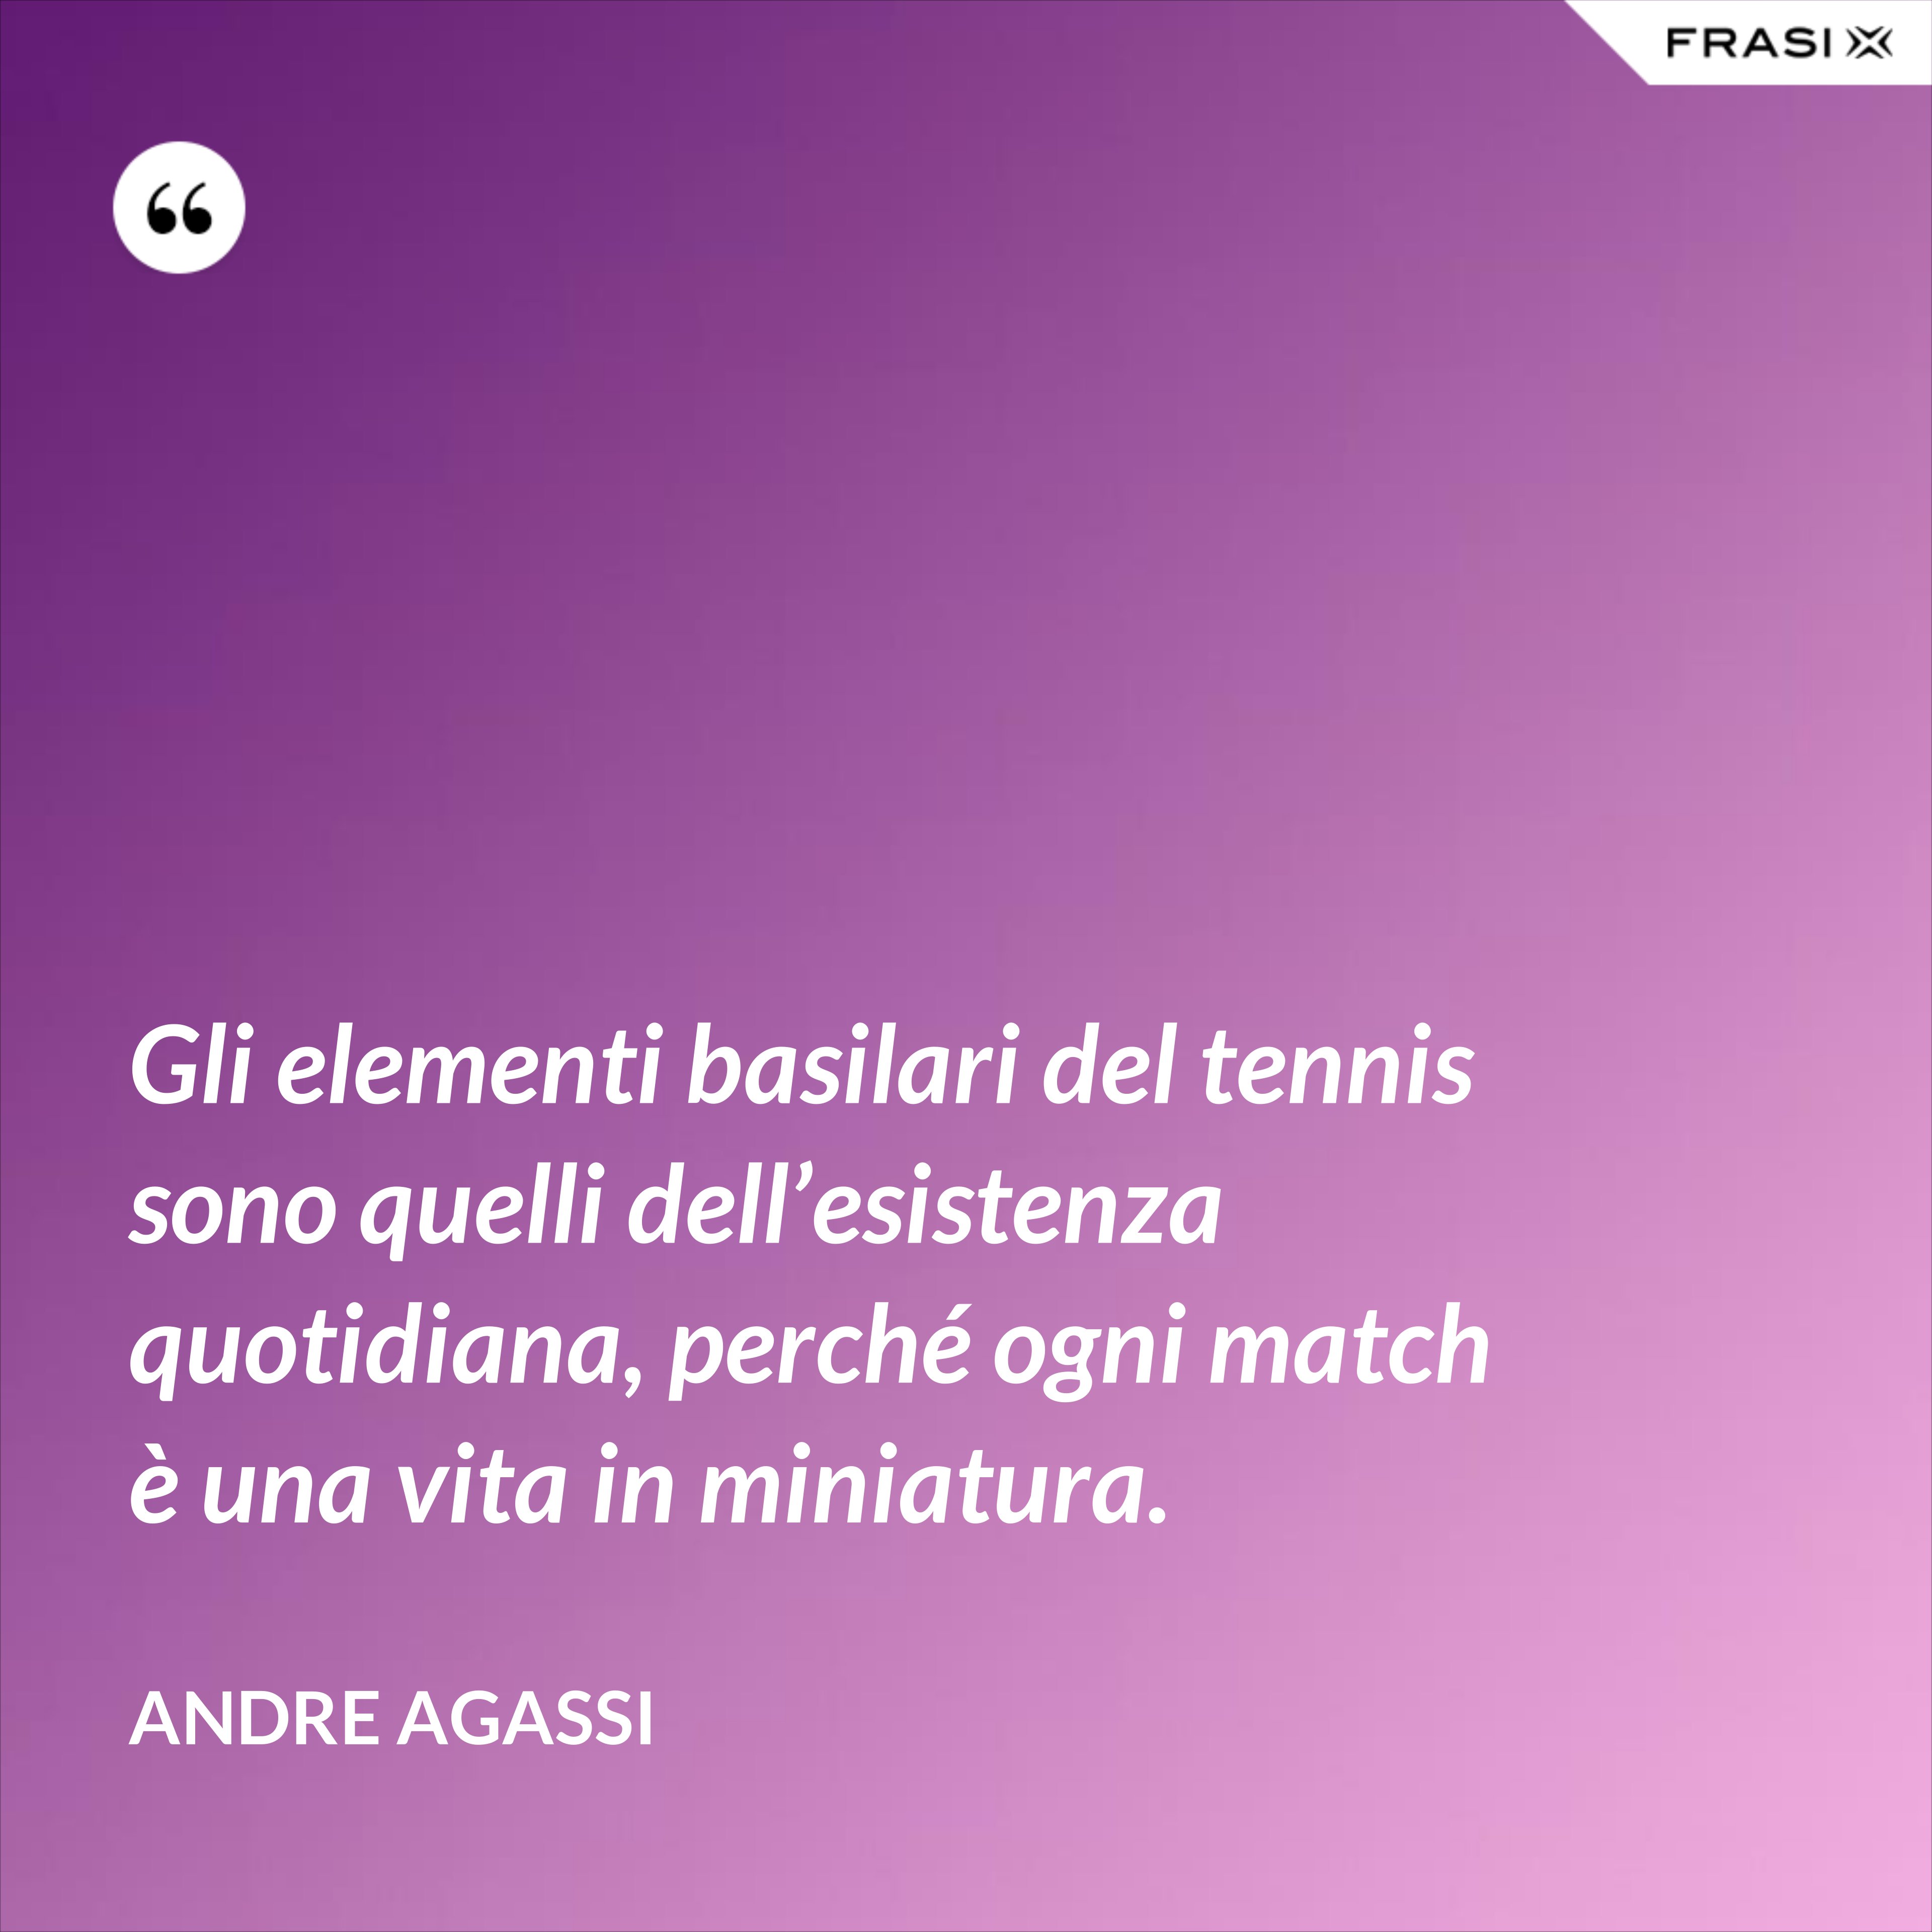 Gli elementi basilari del tennis sono quelli dell’esistenza quotidiana, perché ogni match è una vita in miniatura. - Andre Agassi